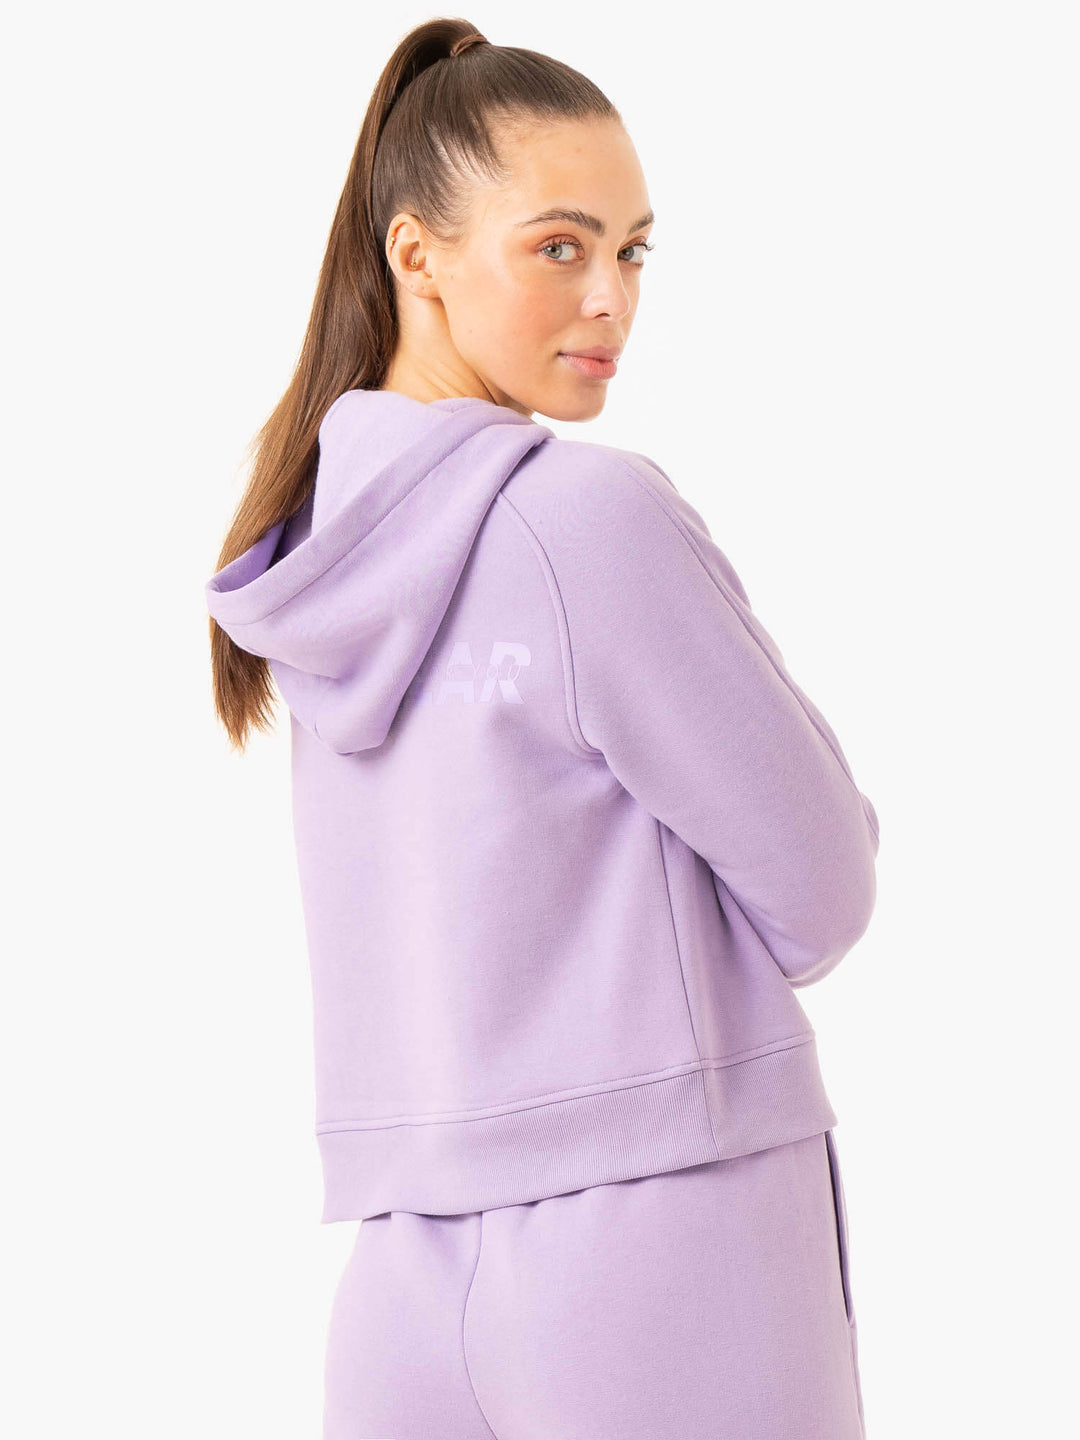 Sideline Hoodie - Lilac Clothing Ryderwear 